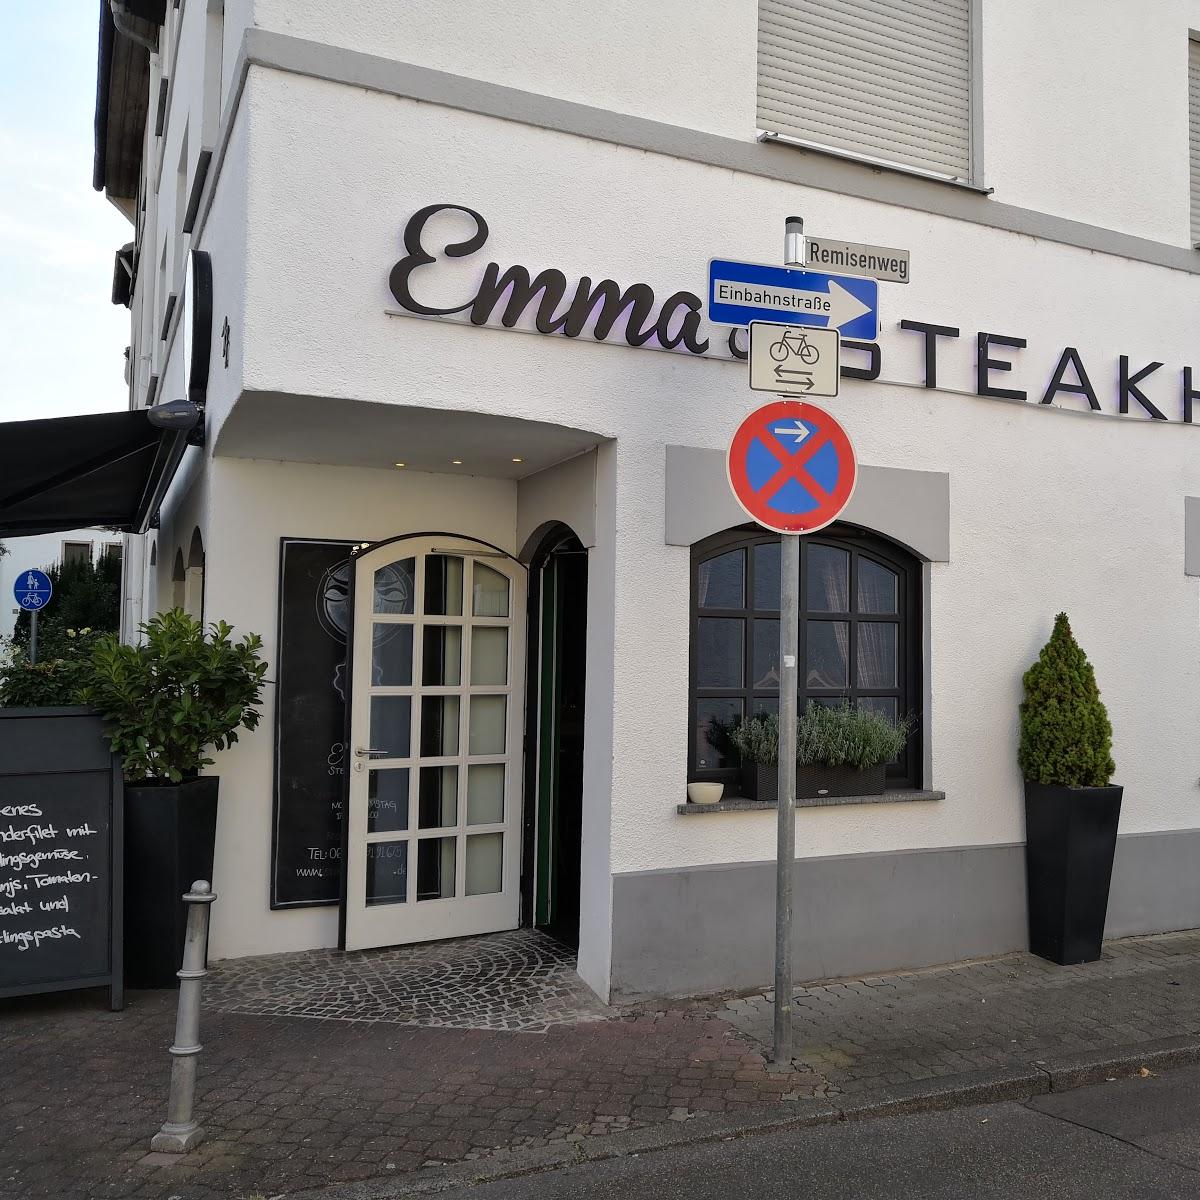 Restaurant "Emma